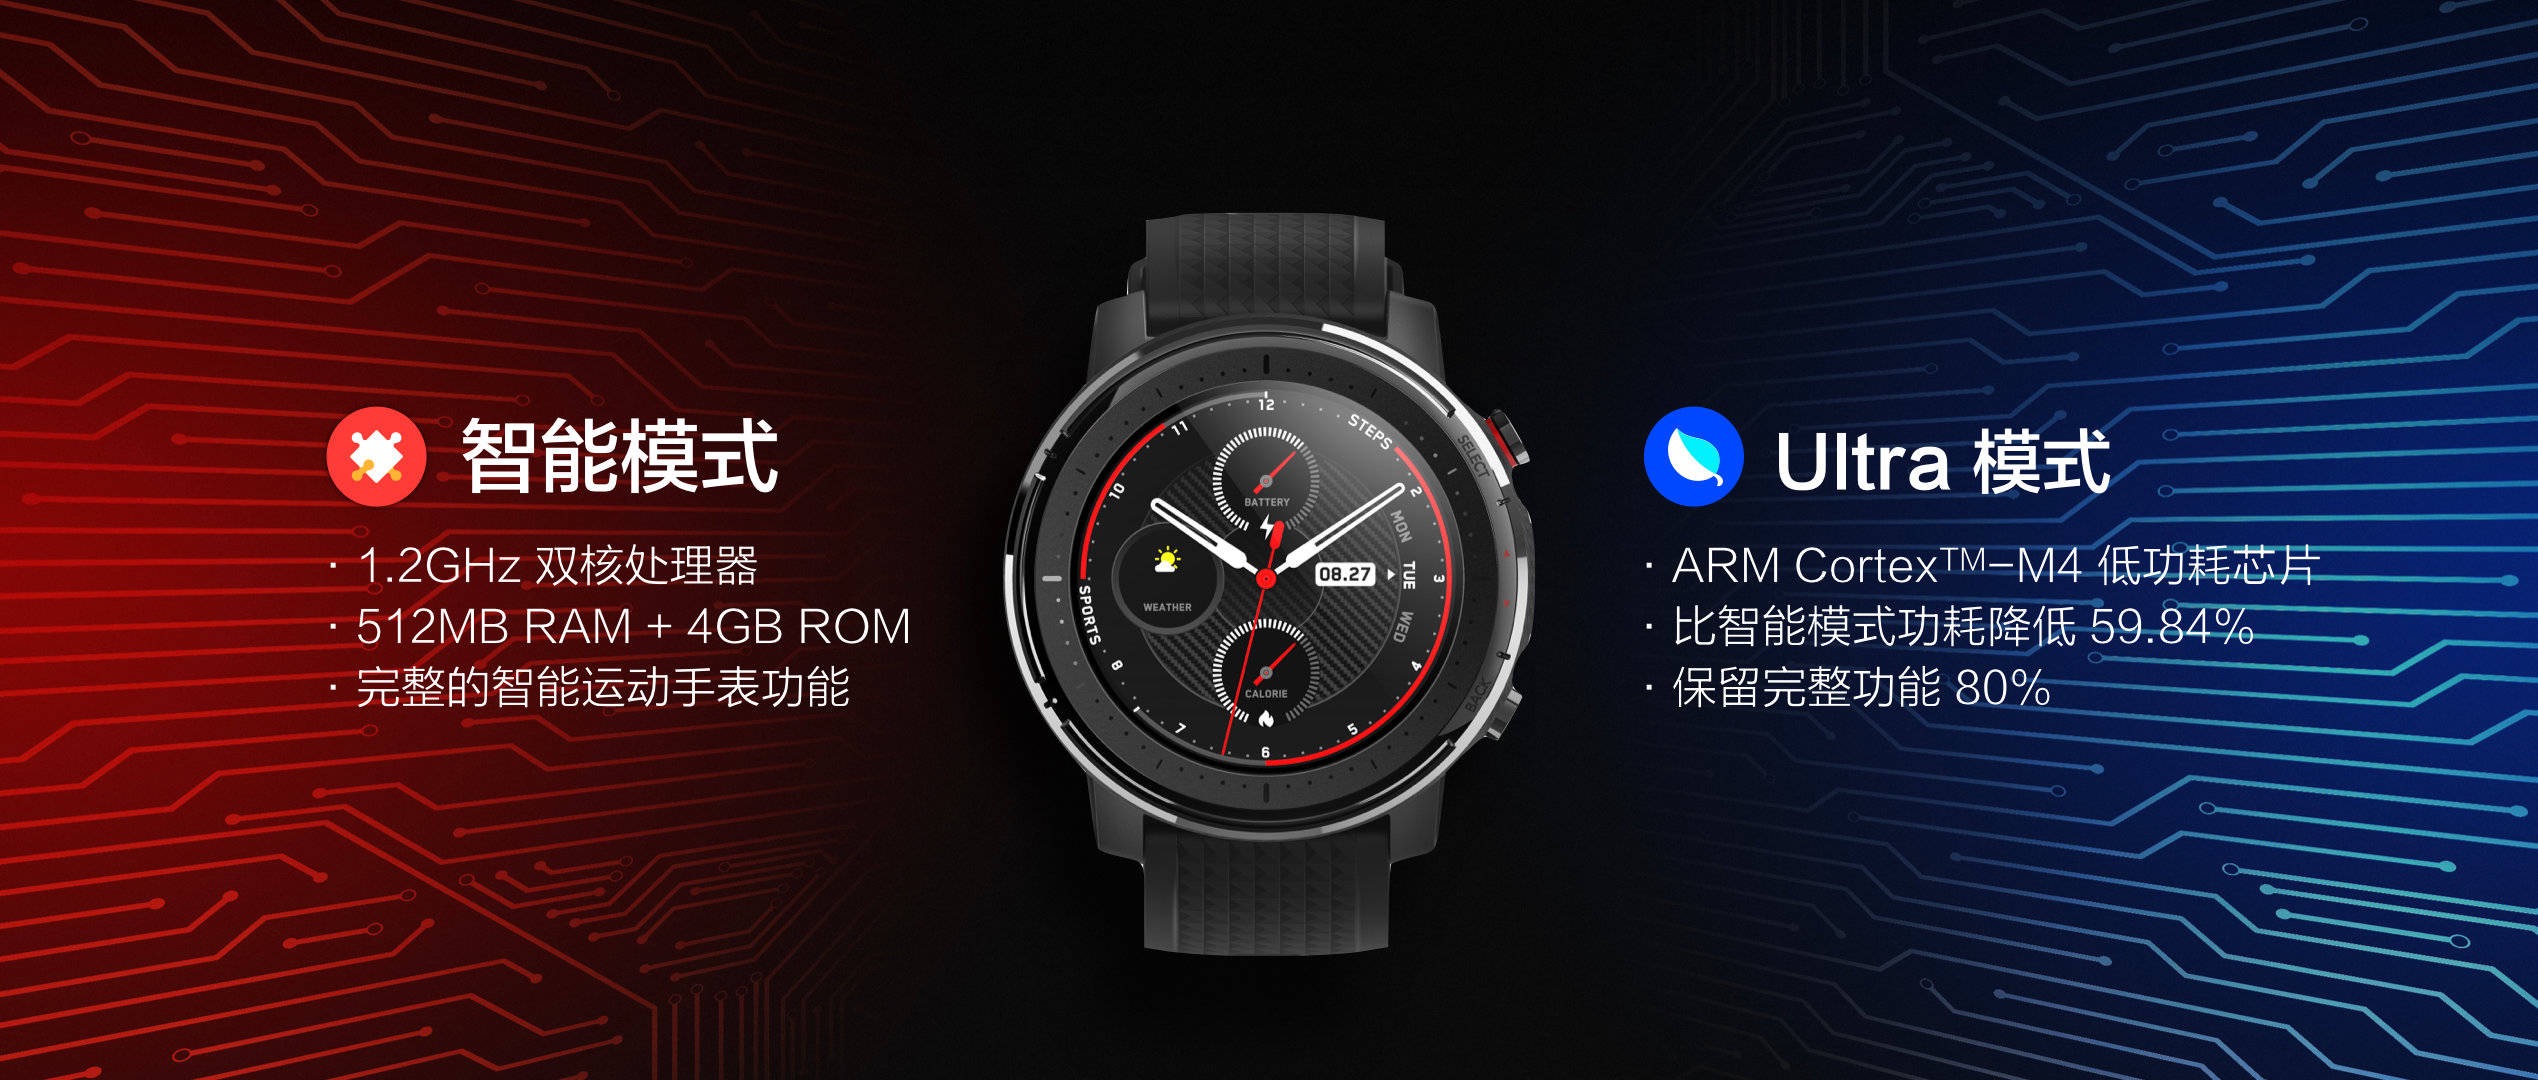 Jam tangan olahraga pintar Amazfit 3, karakteristik, harga, dan spesifikasi. Berita Xiaomi Terbaru